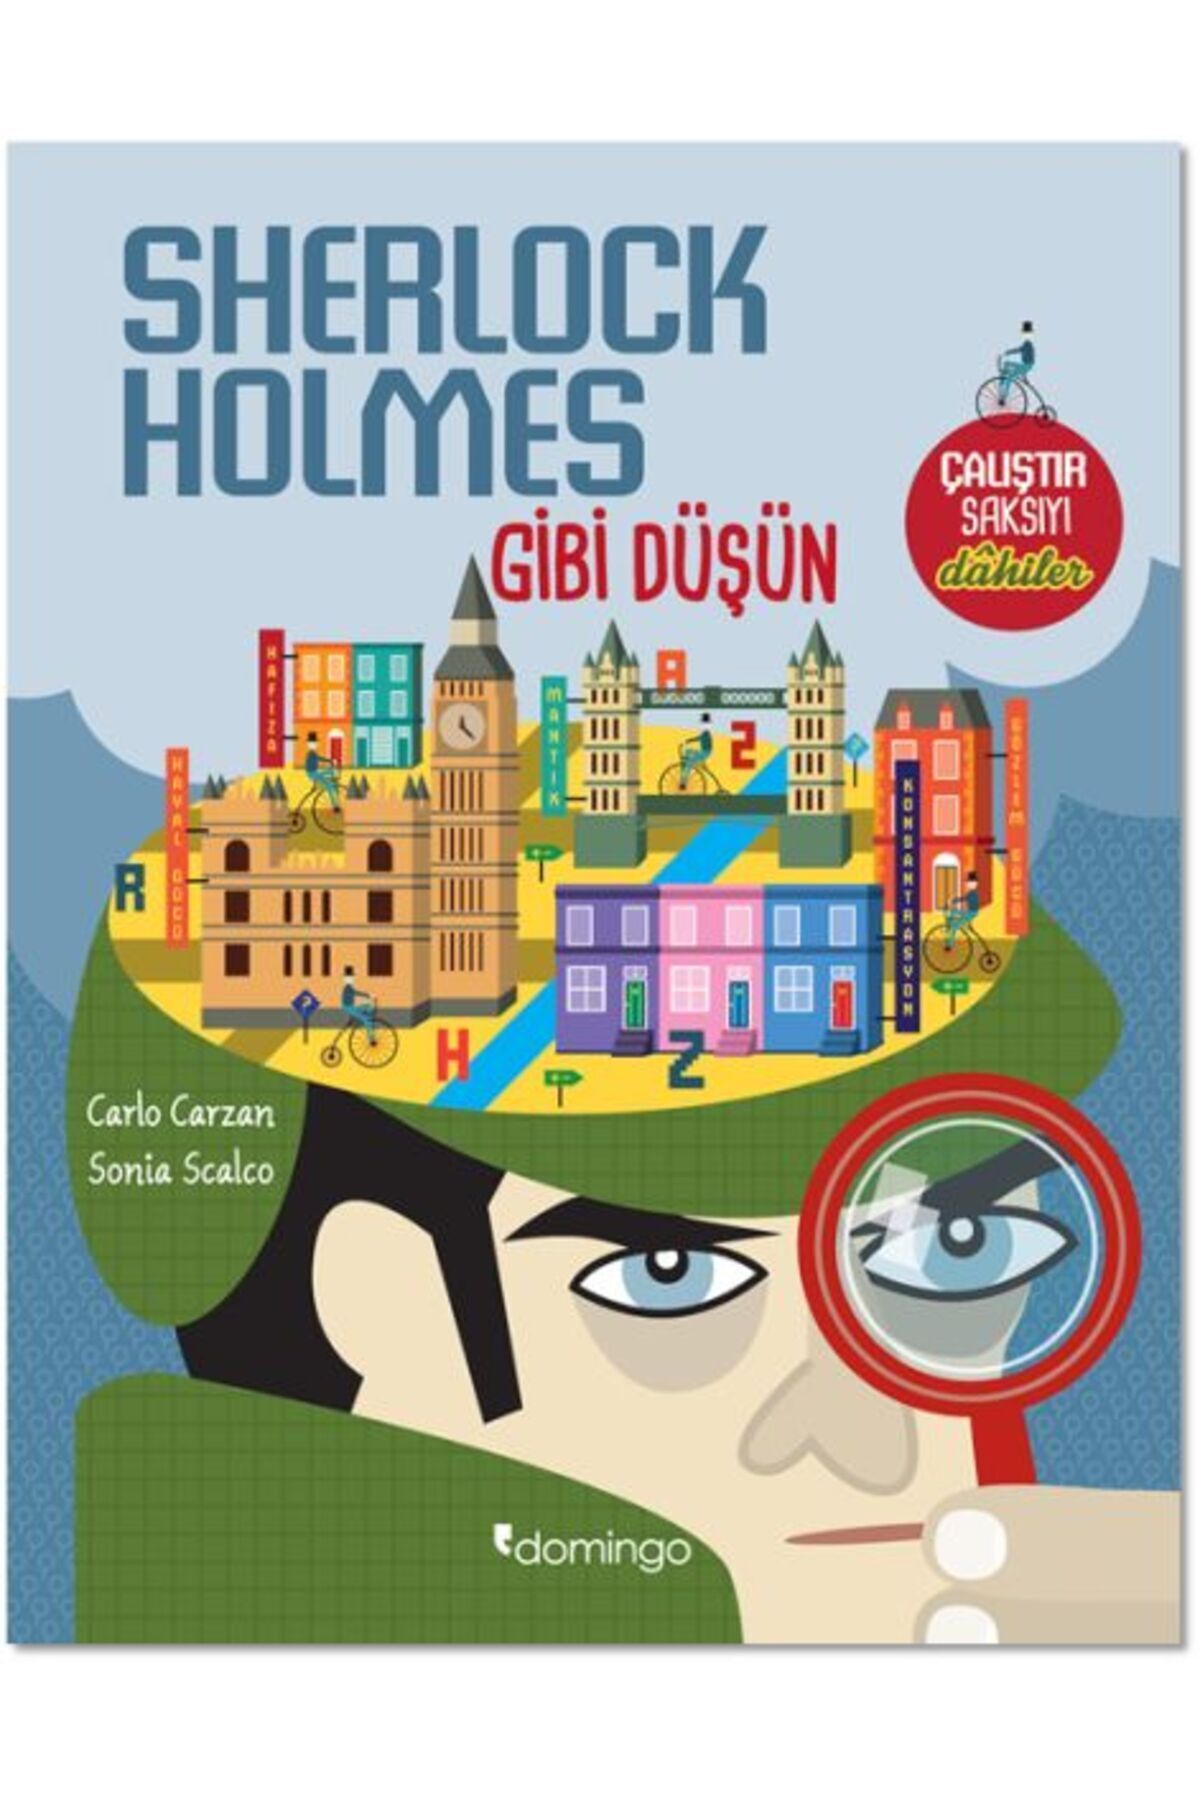 Domingo Yayınevi Çalıştır Saksıyı – Sherlock Holmes Gibi Düşün